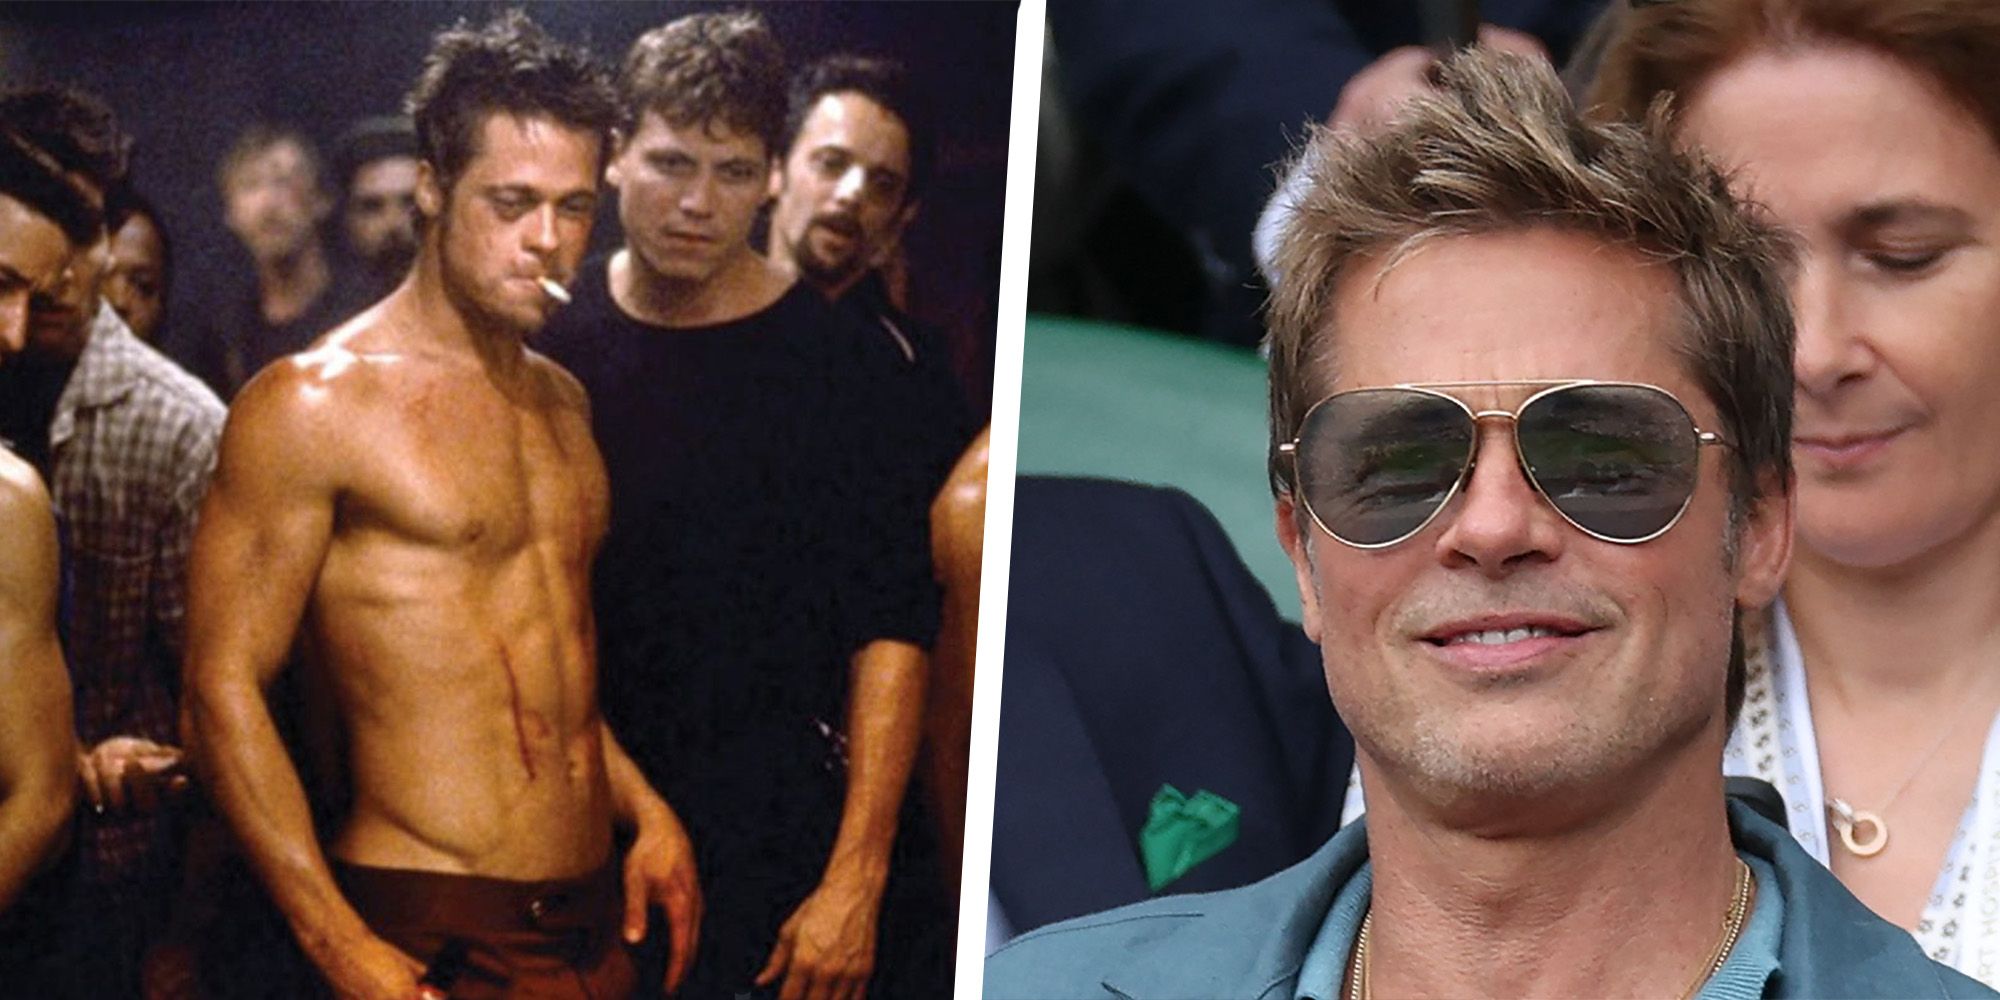 How Brad Pitt Got Shredded for 'Snatch': Boxing Workout - Men's Journal